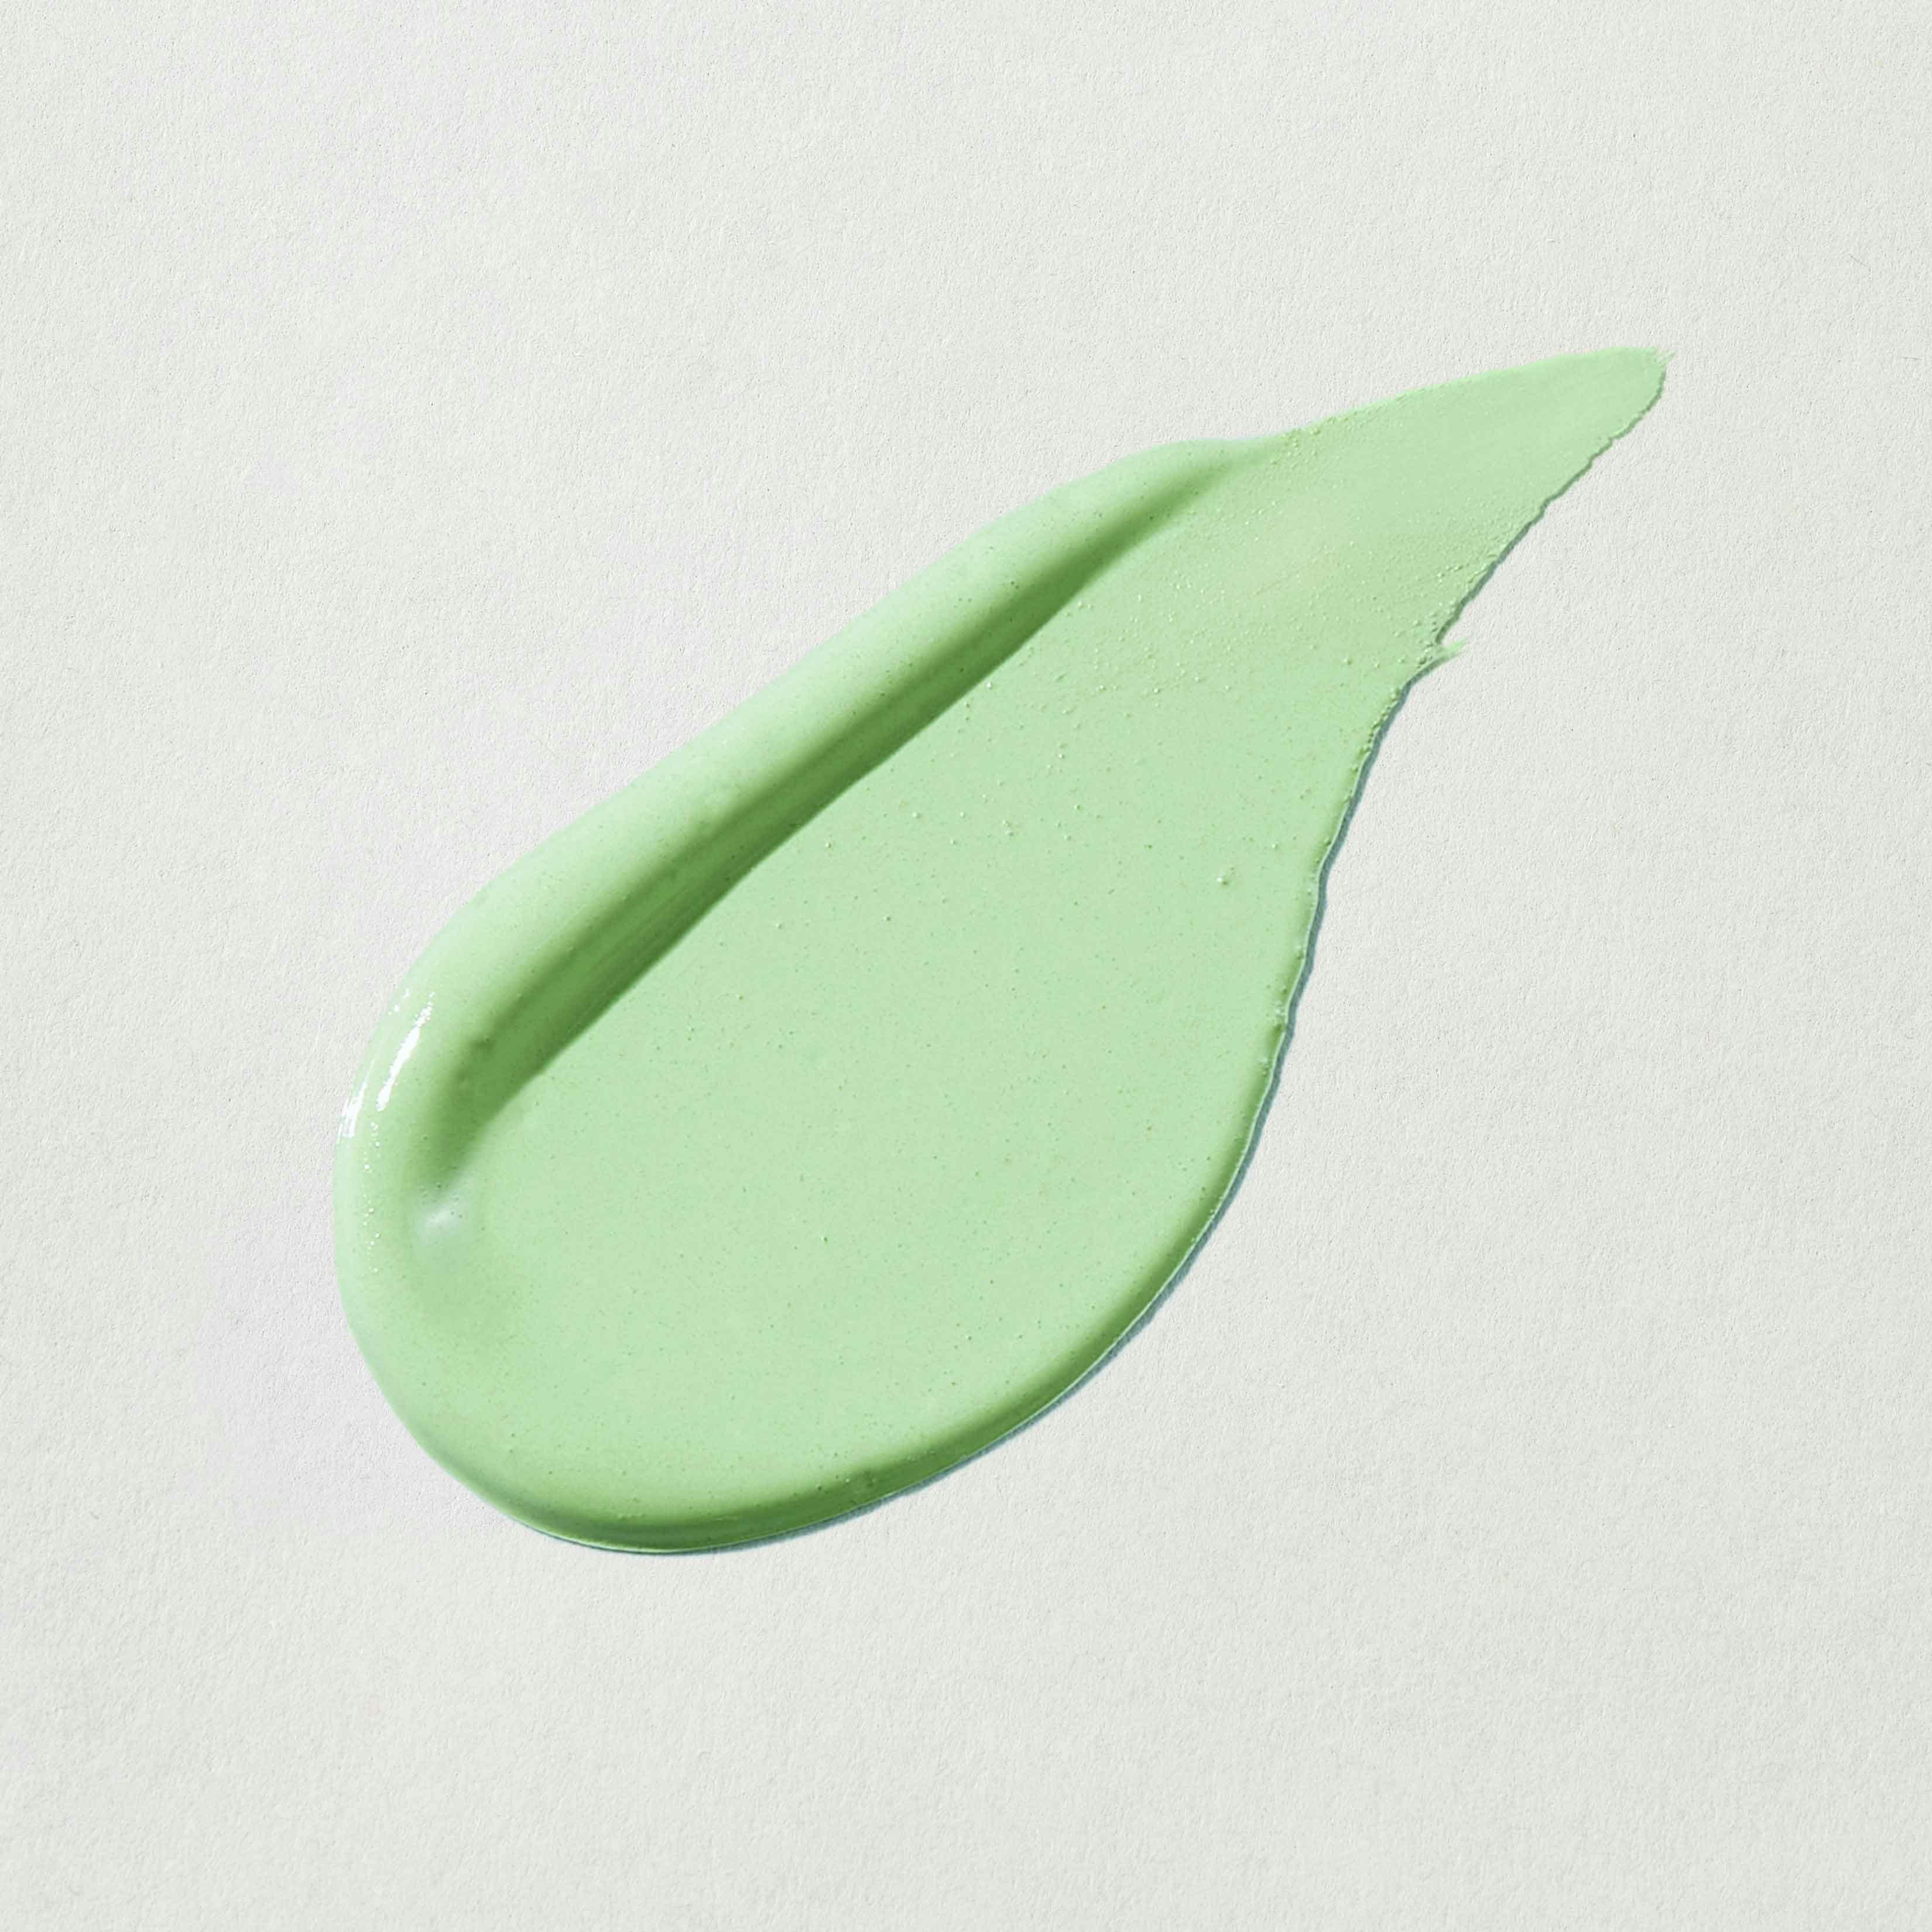 neutrogena green concealer